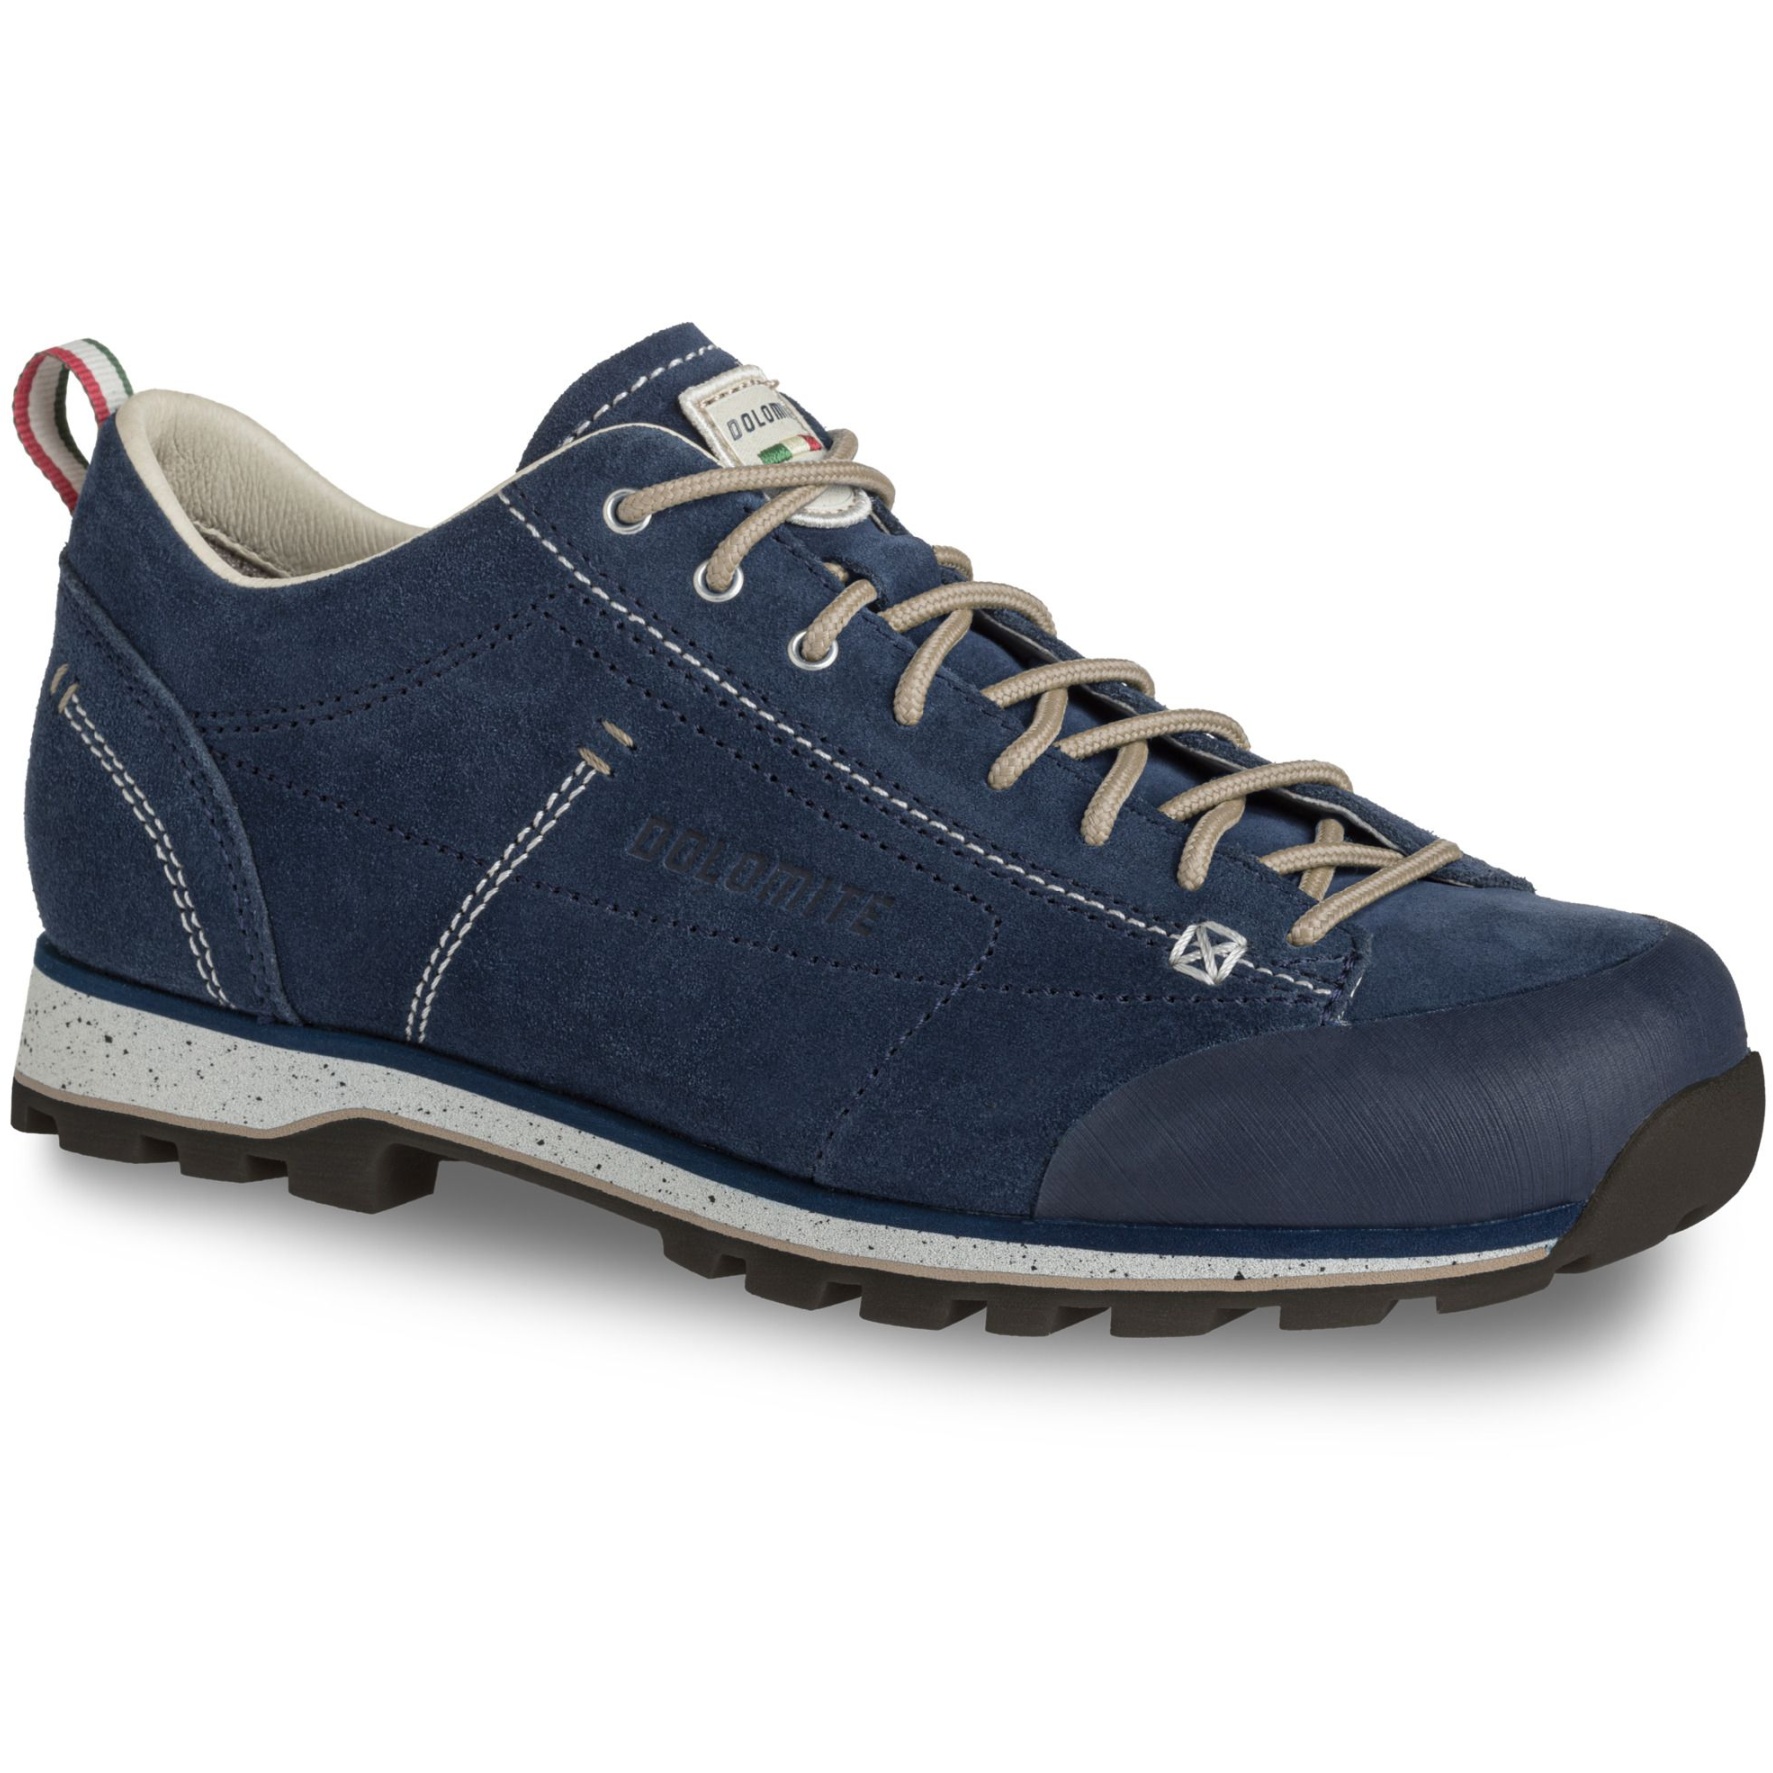 Produktbild von Dolomite 54 Low Evo Schuhe Herren - blau